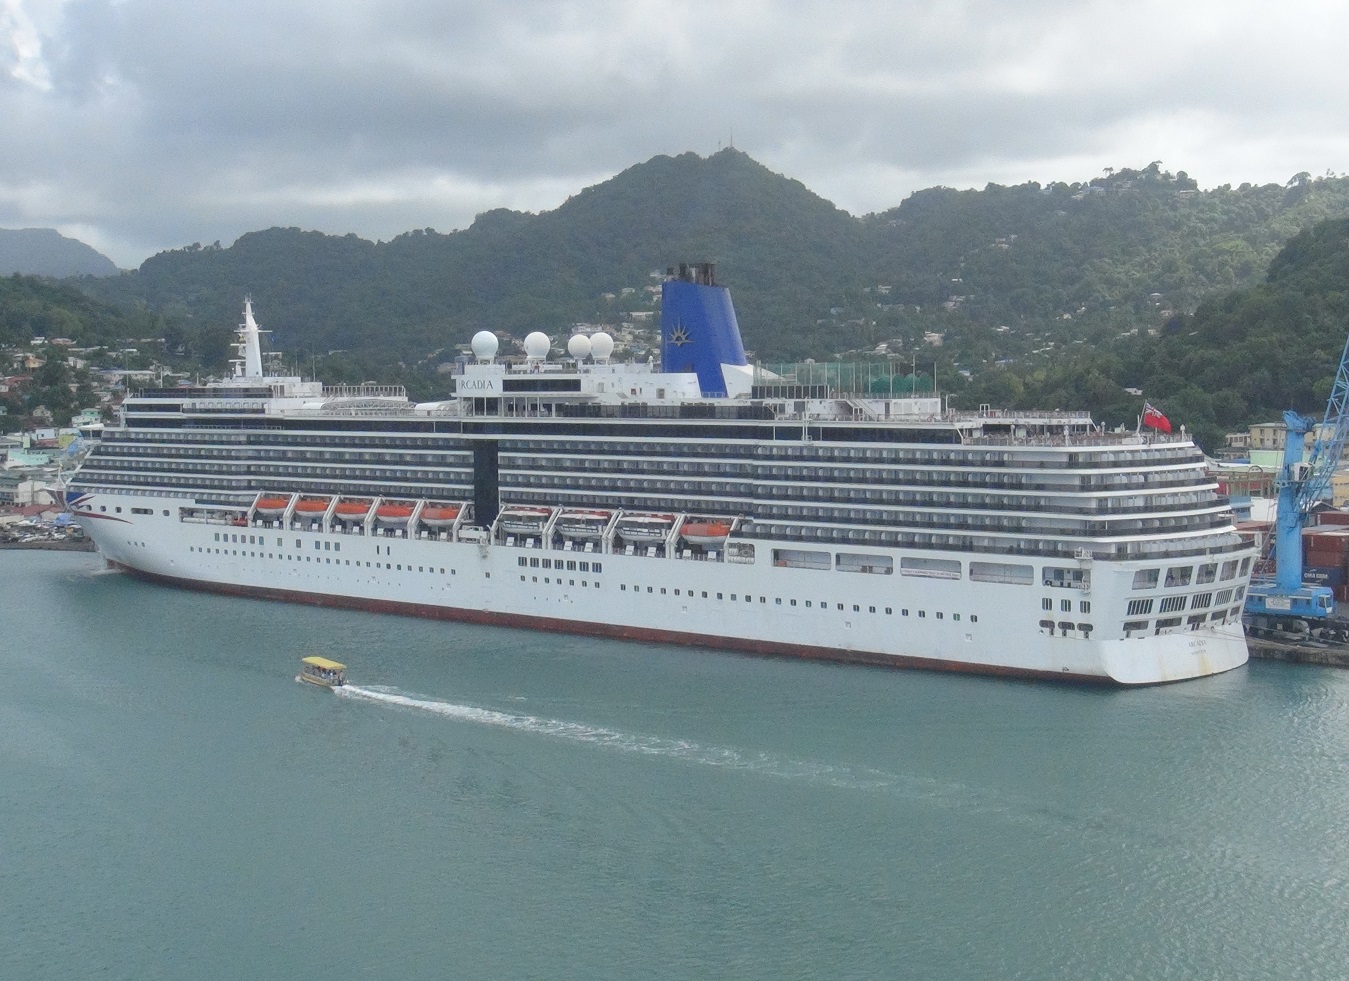 About PO Cruises MV Arcadia cruise ship